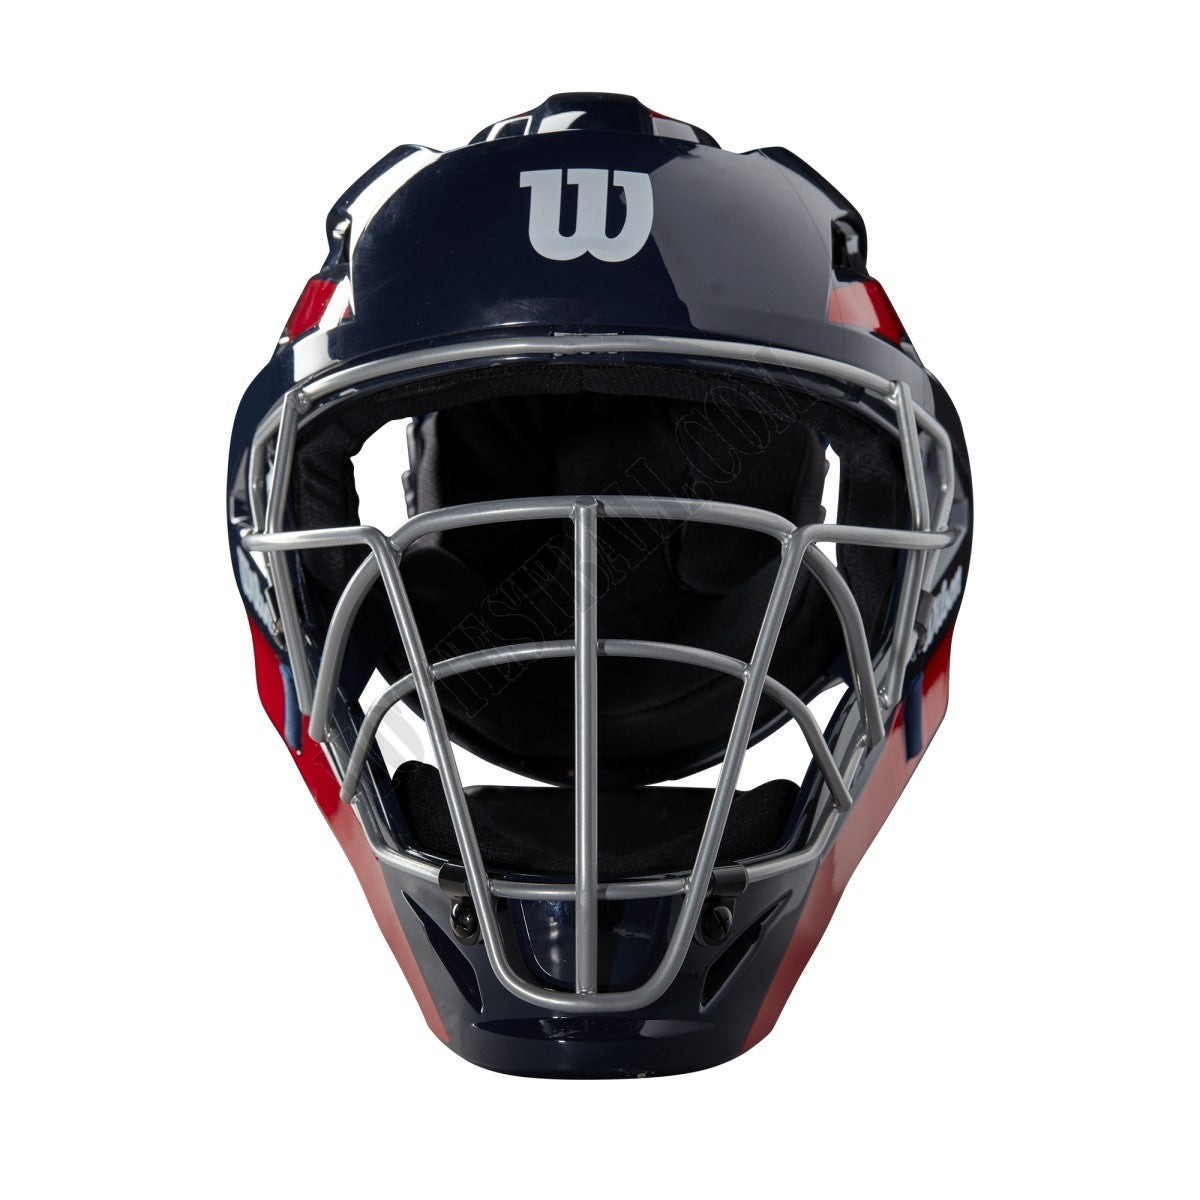 Wilson Pro Stock Catcher's Helmet USA - Wilson Discount Store - Wilson Pro Stock Catcher's Helmet USA - Wilson Discount Store